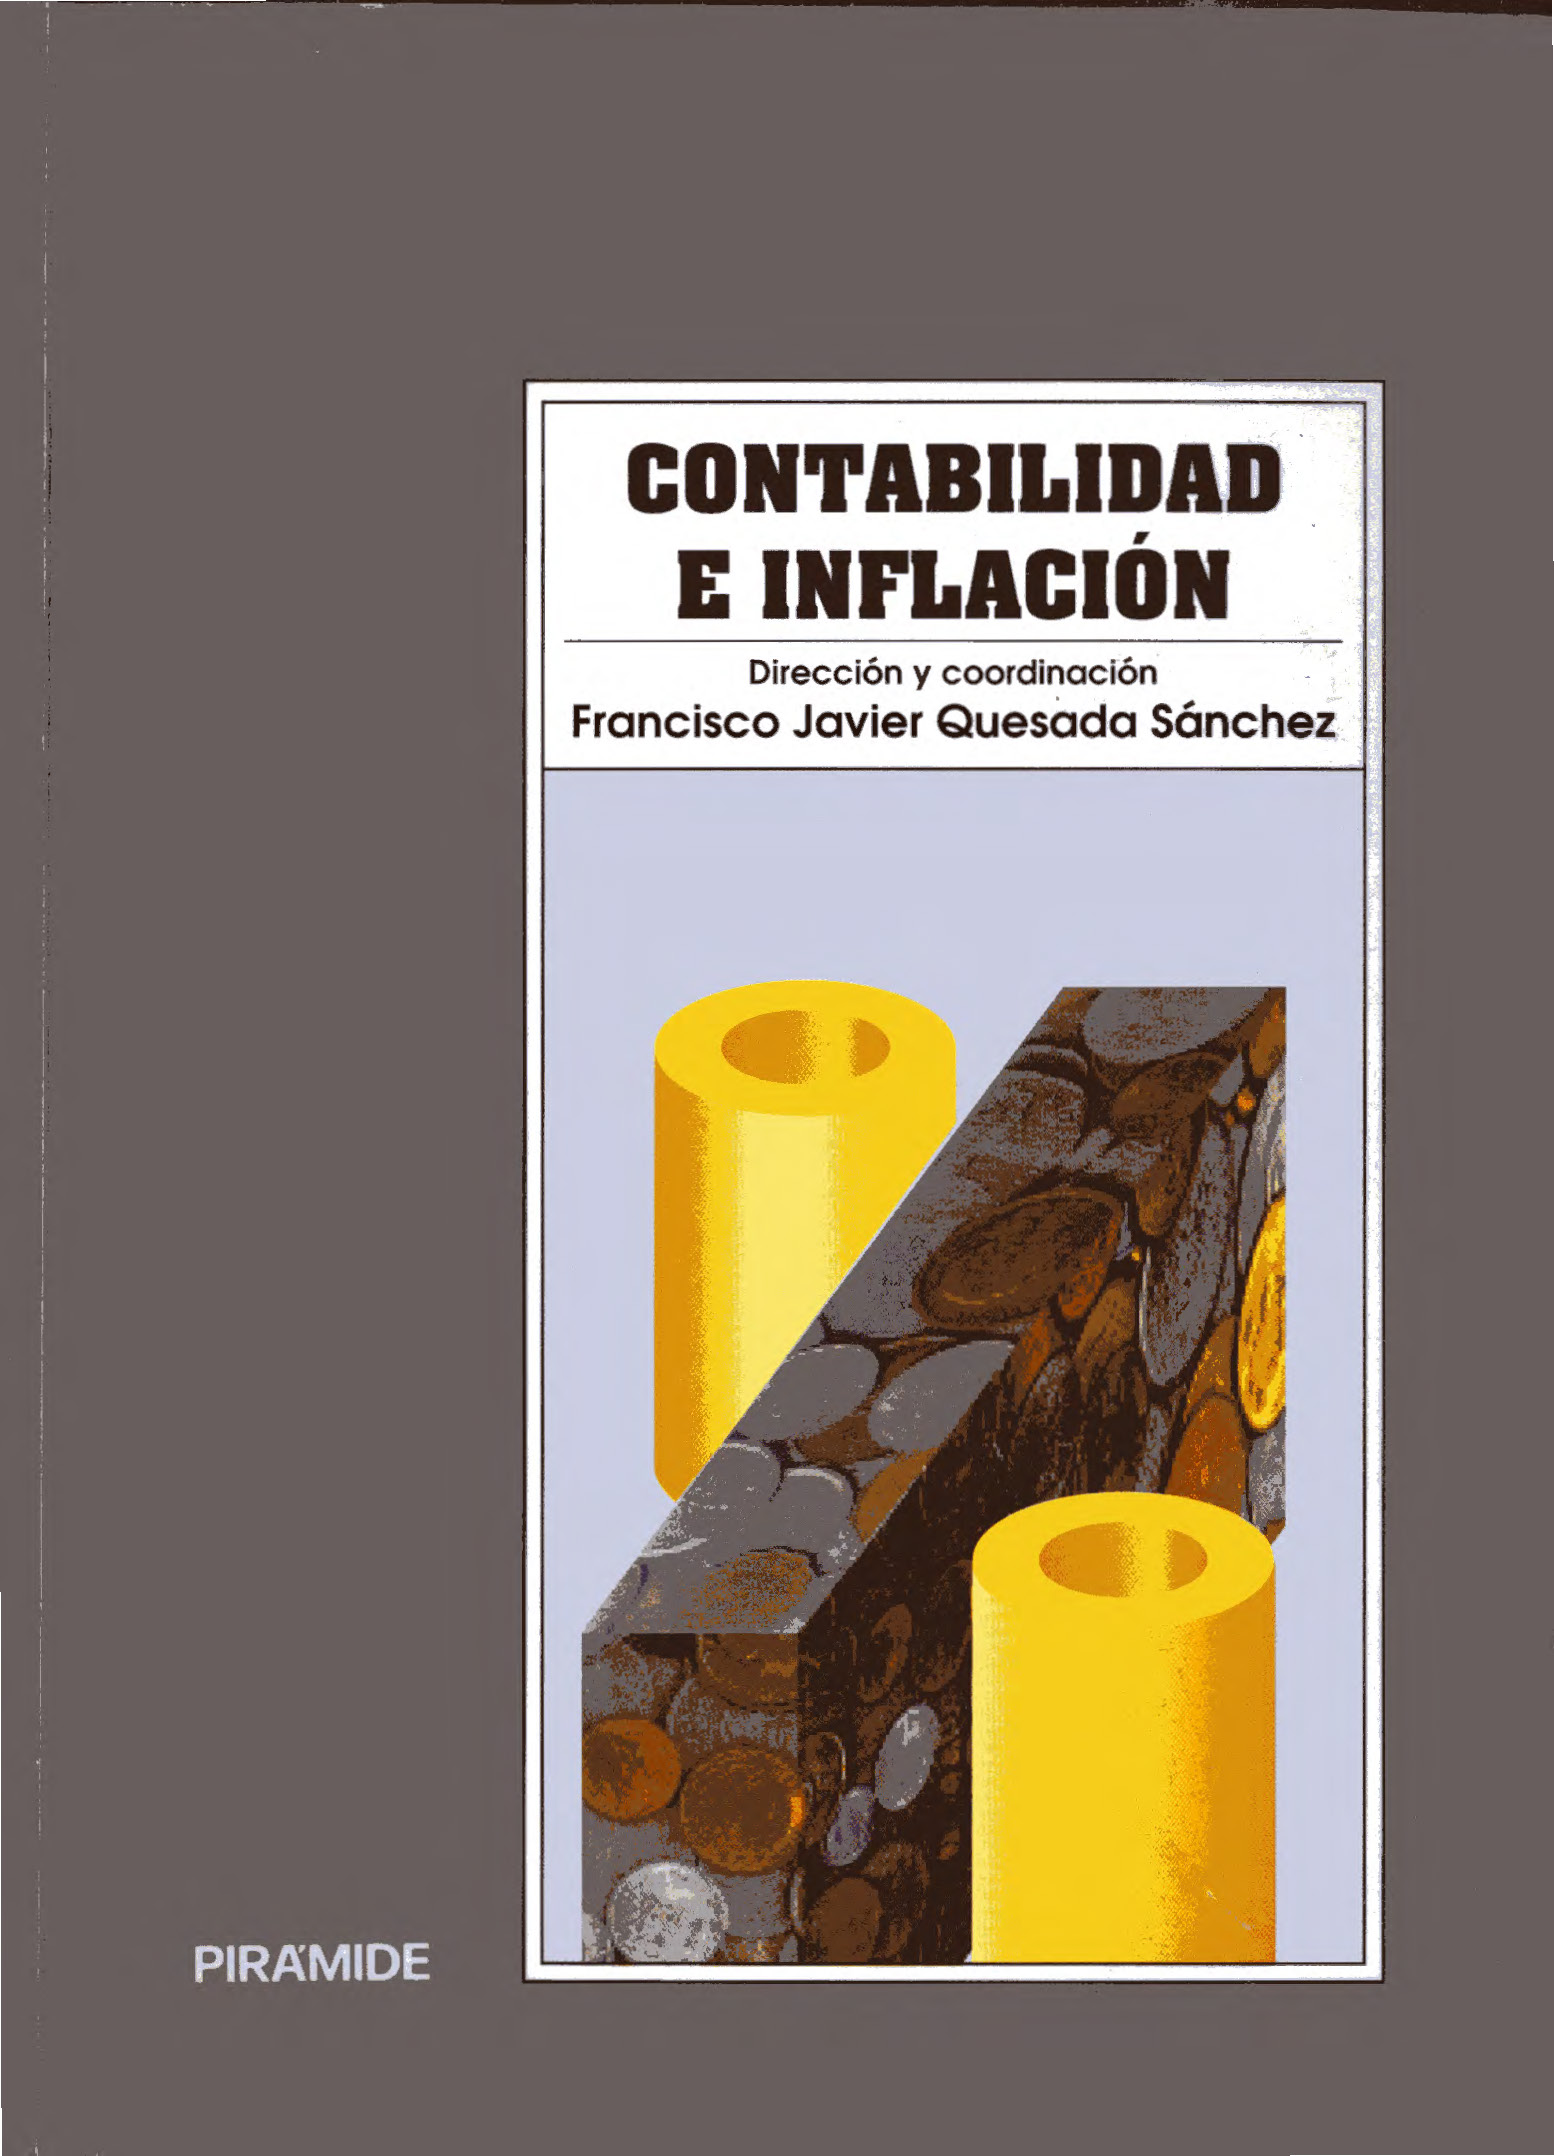 Imagen de portada del libro Contabilidad e inflación